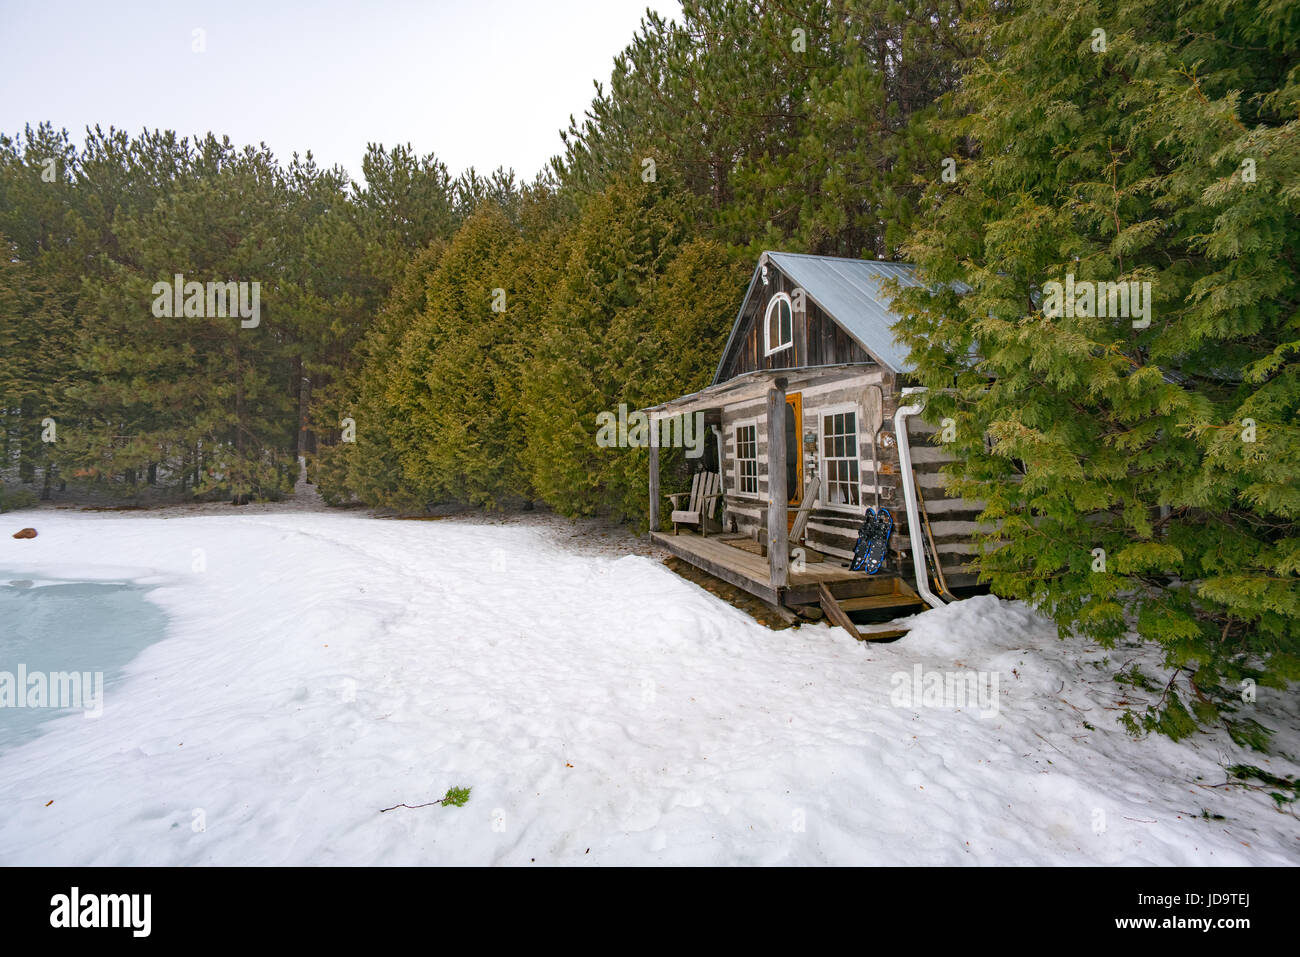 All'aperto, la cabina nei boschi in inverno, giornata soleggiata, Ontario, Canada ontario canada freddo inverno 2017 snow Foto Stock